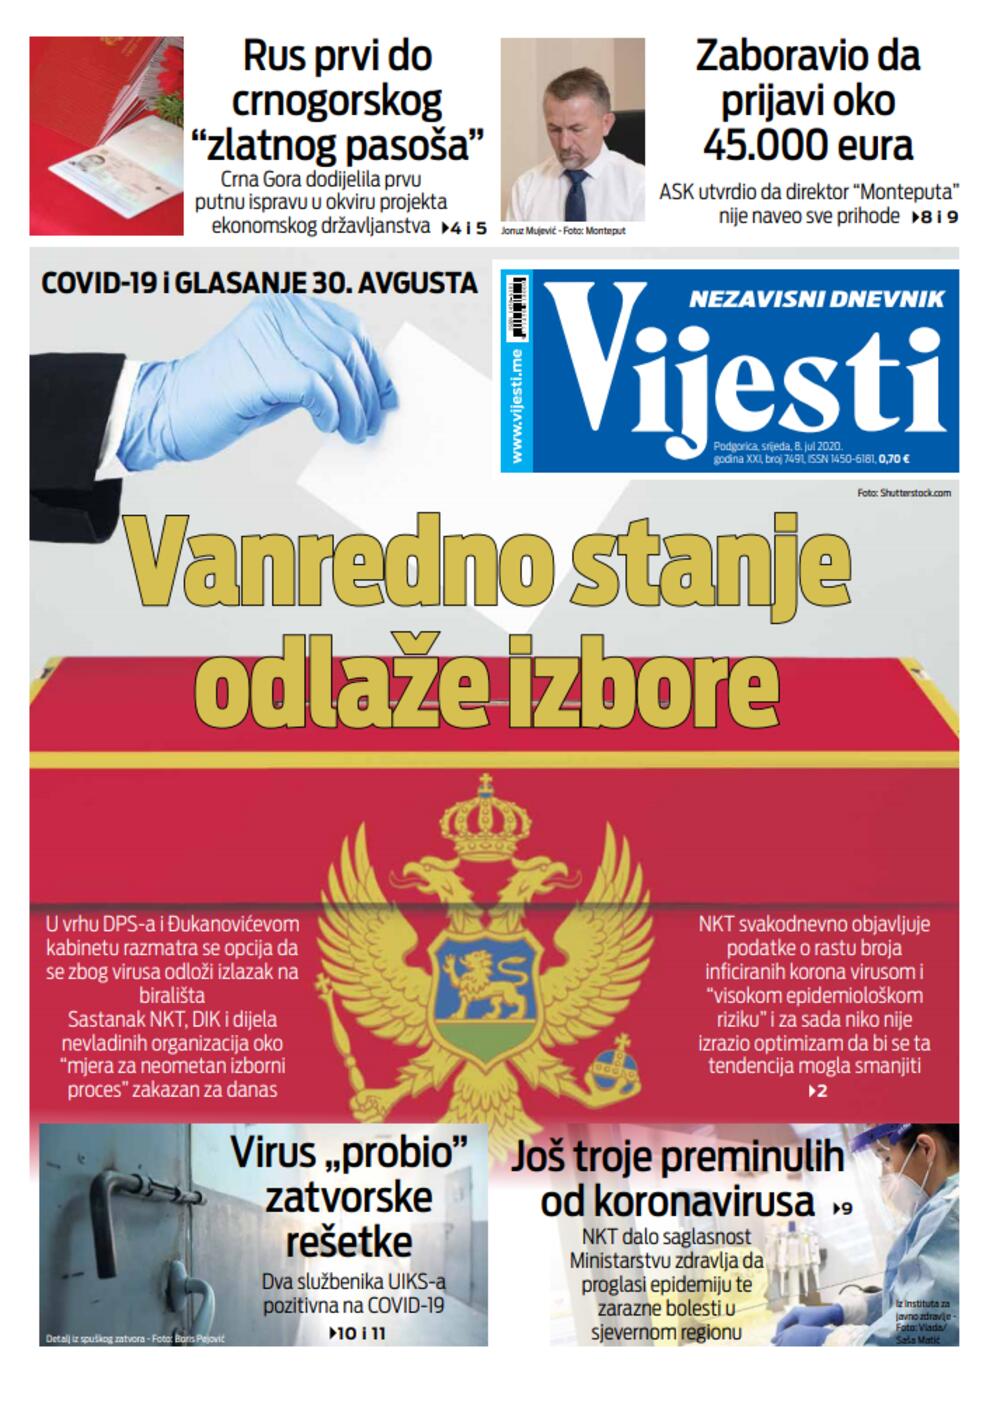 Naslovna strana "Vijesti" za 8. jul 2020., Foto: Vijesti